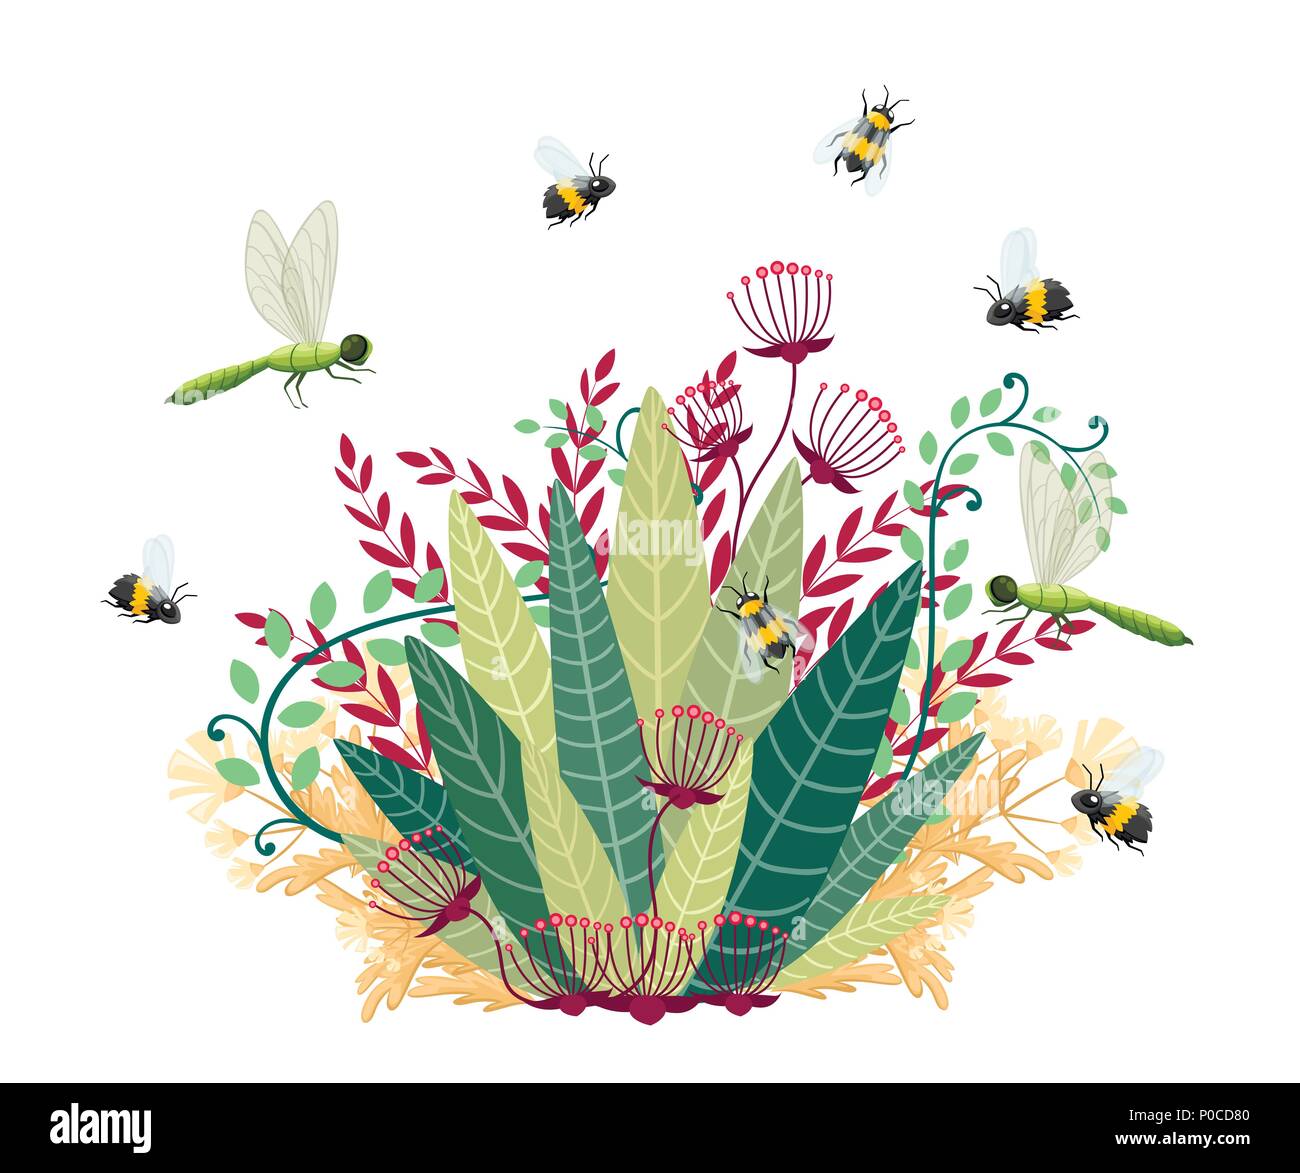 Green Bush mit Fliege Insekt. Cartoon Design. Bienen und Libellen mit floralen Elements. Flache Vector Illustration auf weißem Hintergrund. Stock Vektor